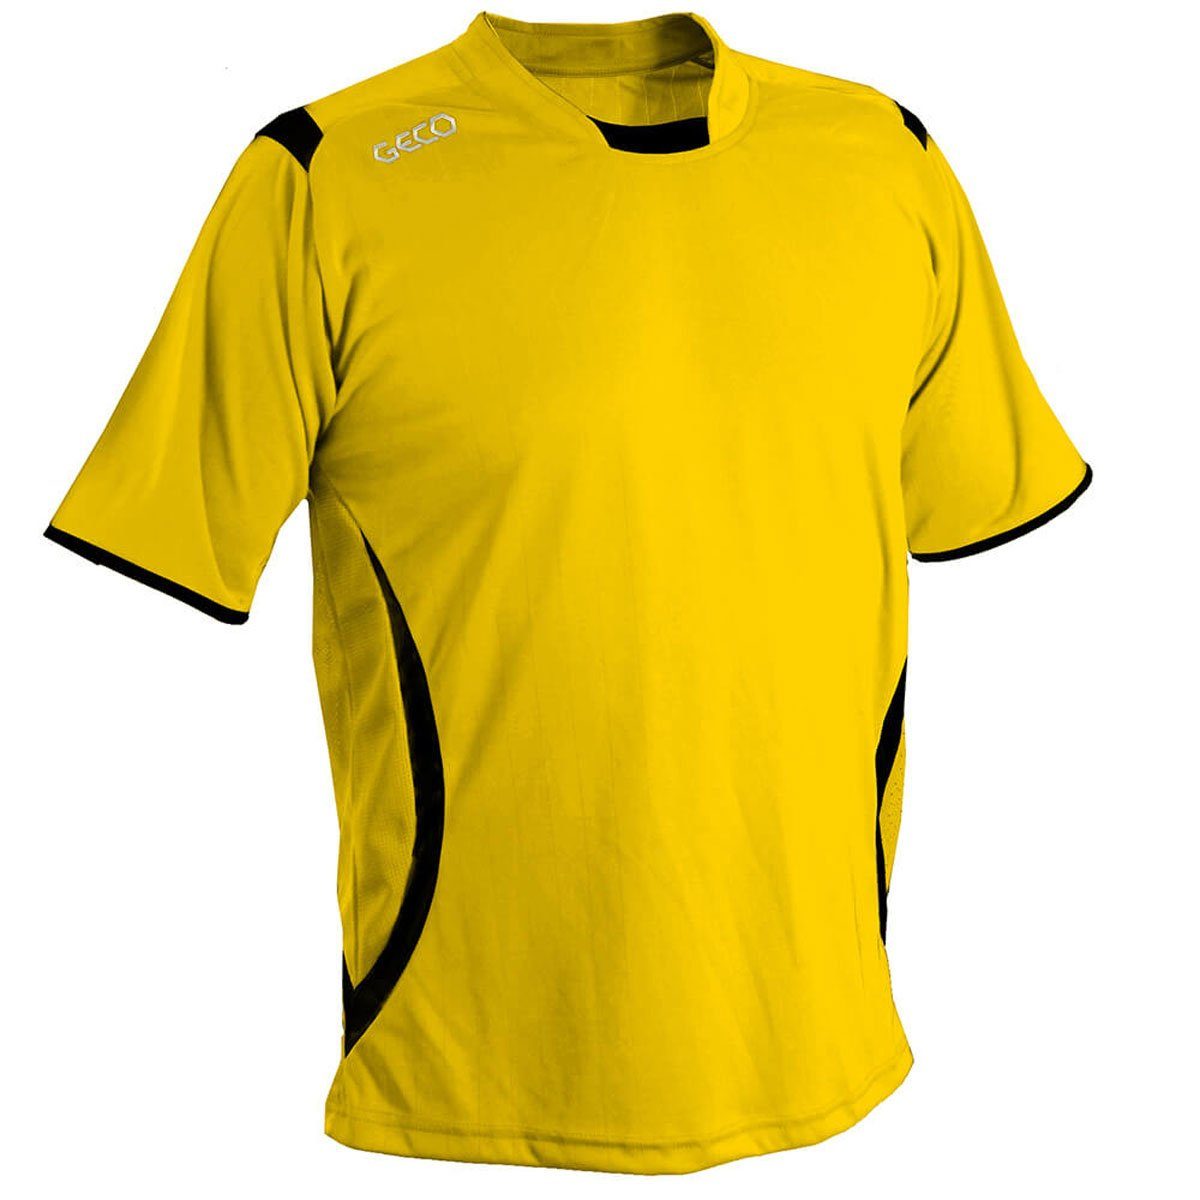 Geco Sportswear Fußballtrikot Fußballtrikot Geco Levante Trikot gelb/schwarz seitliche Fußball Einsätze kurzarm Mesh zweifarbig